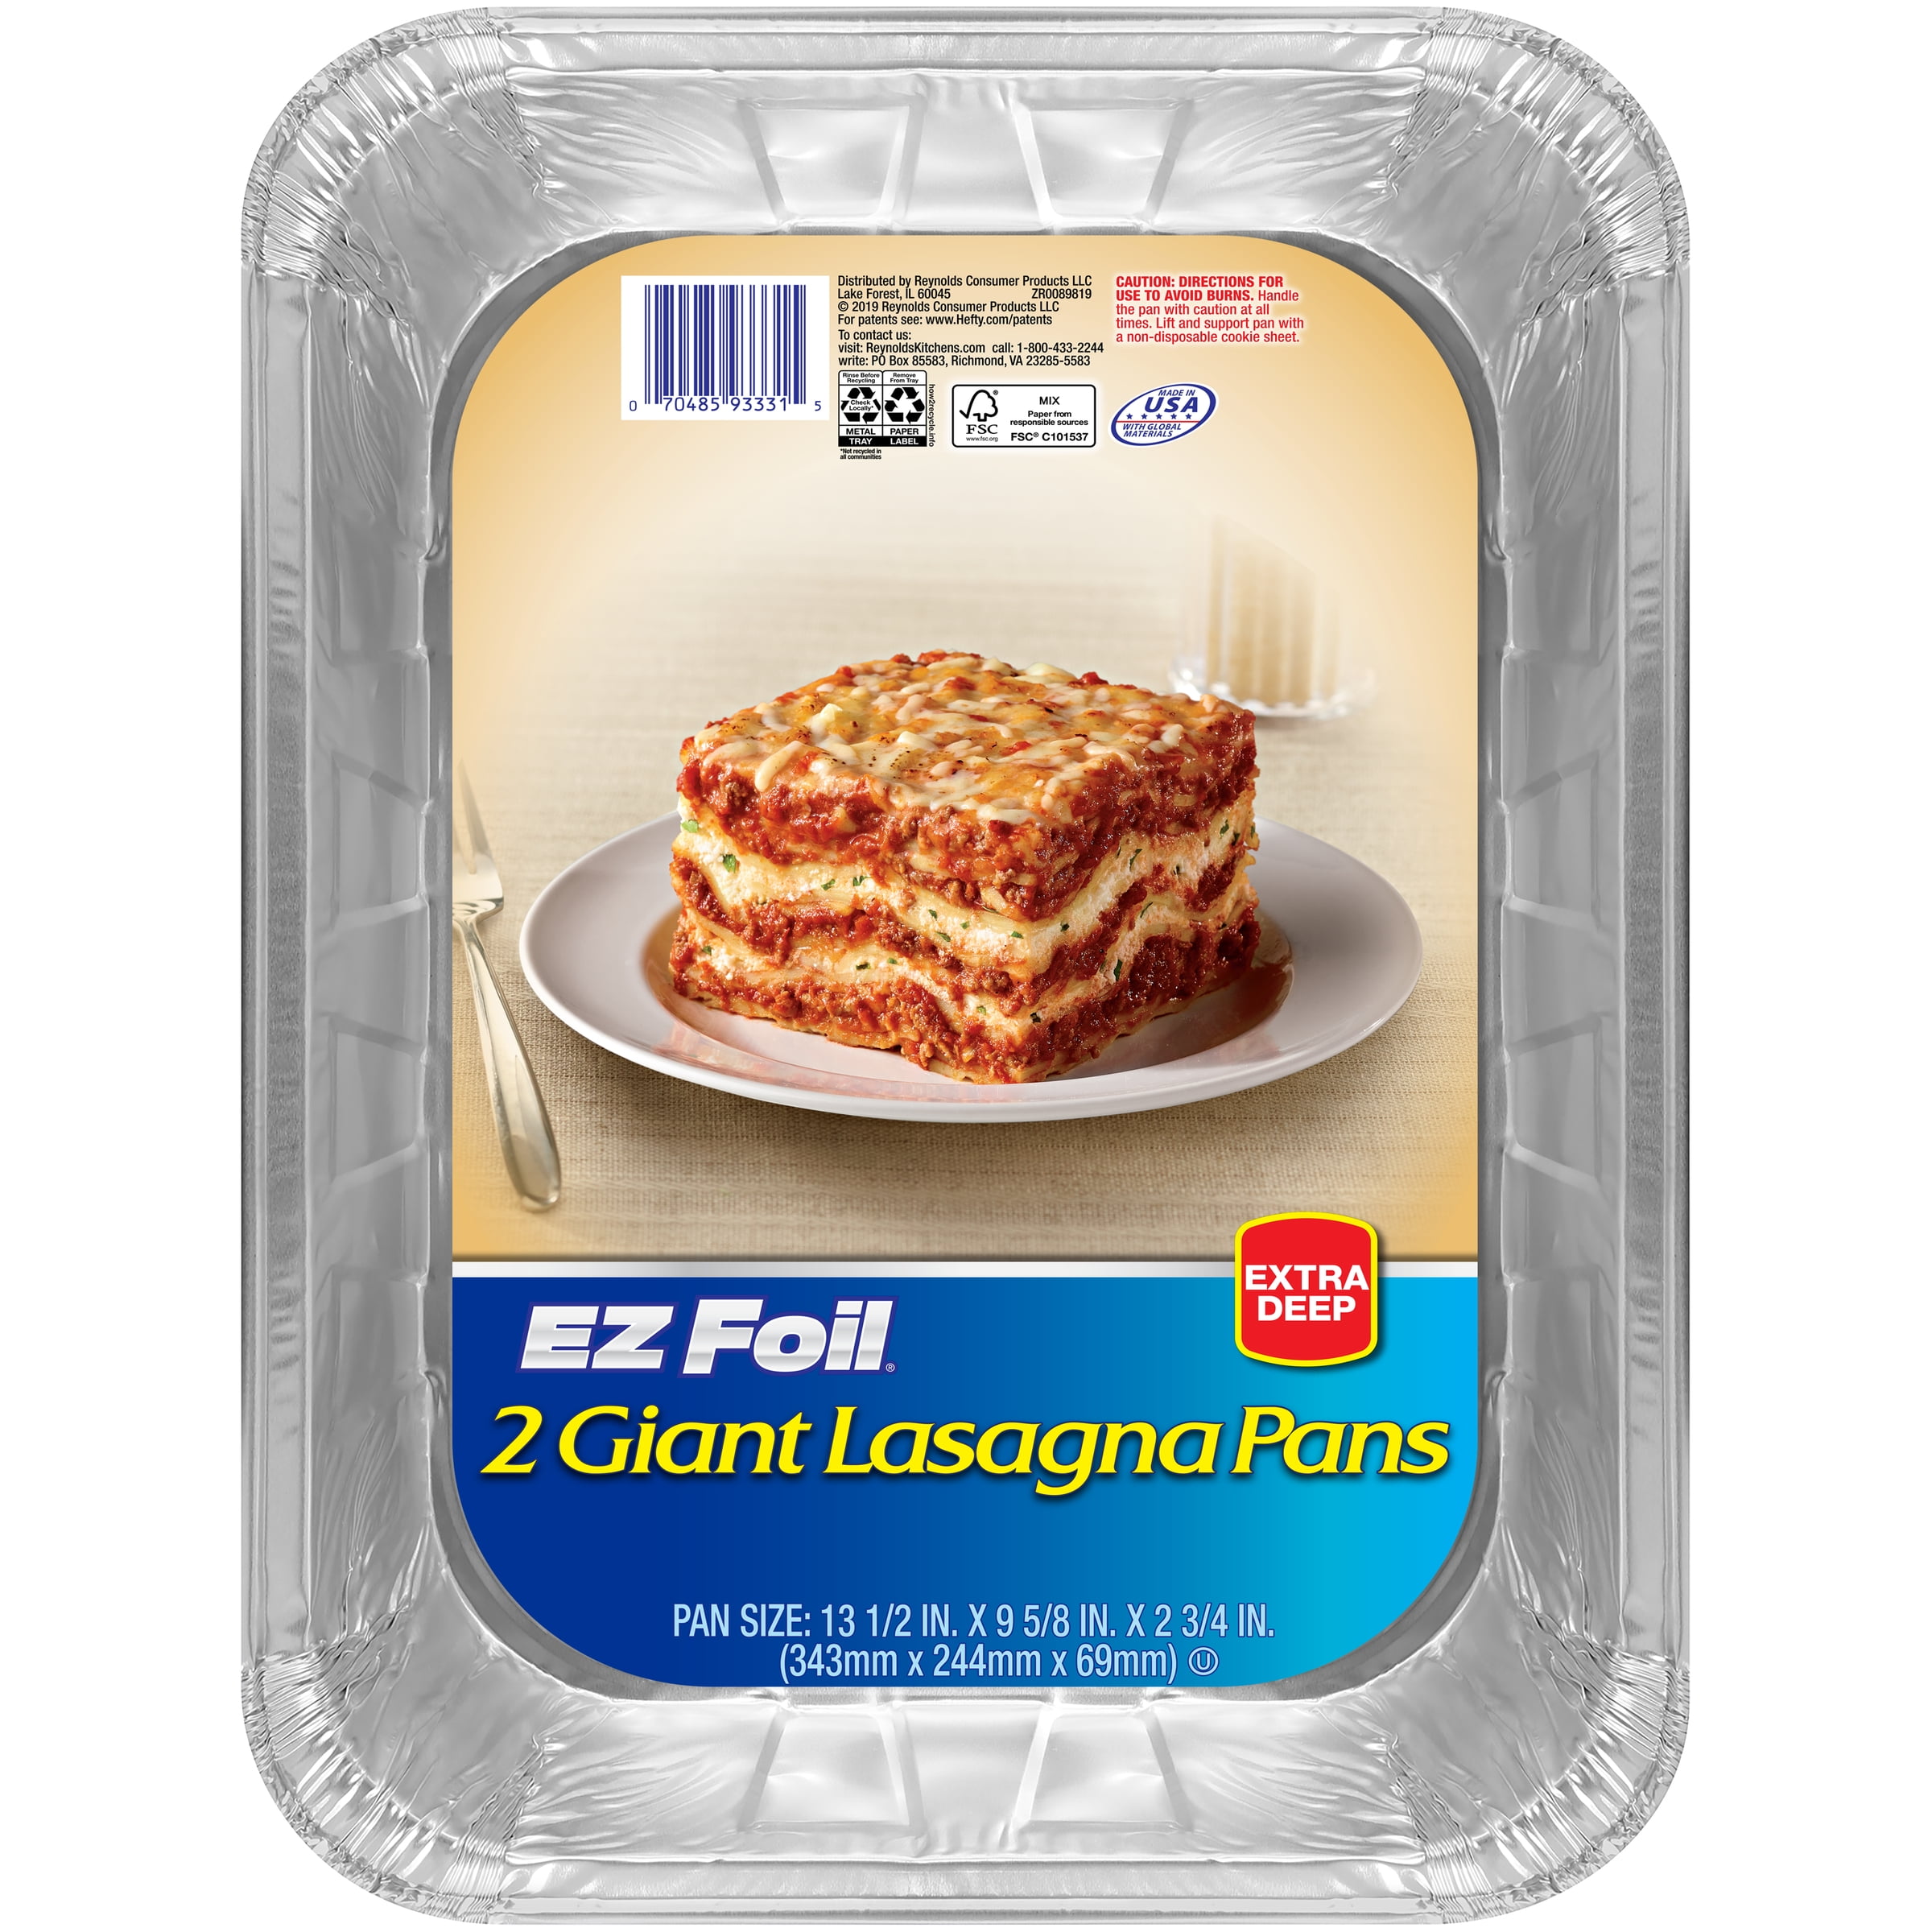 extra deep lasagna pan